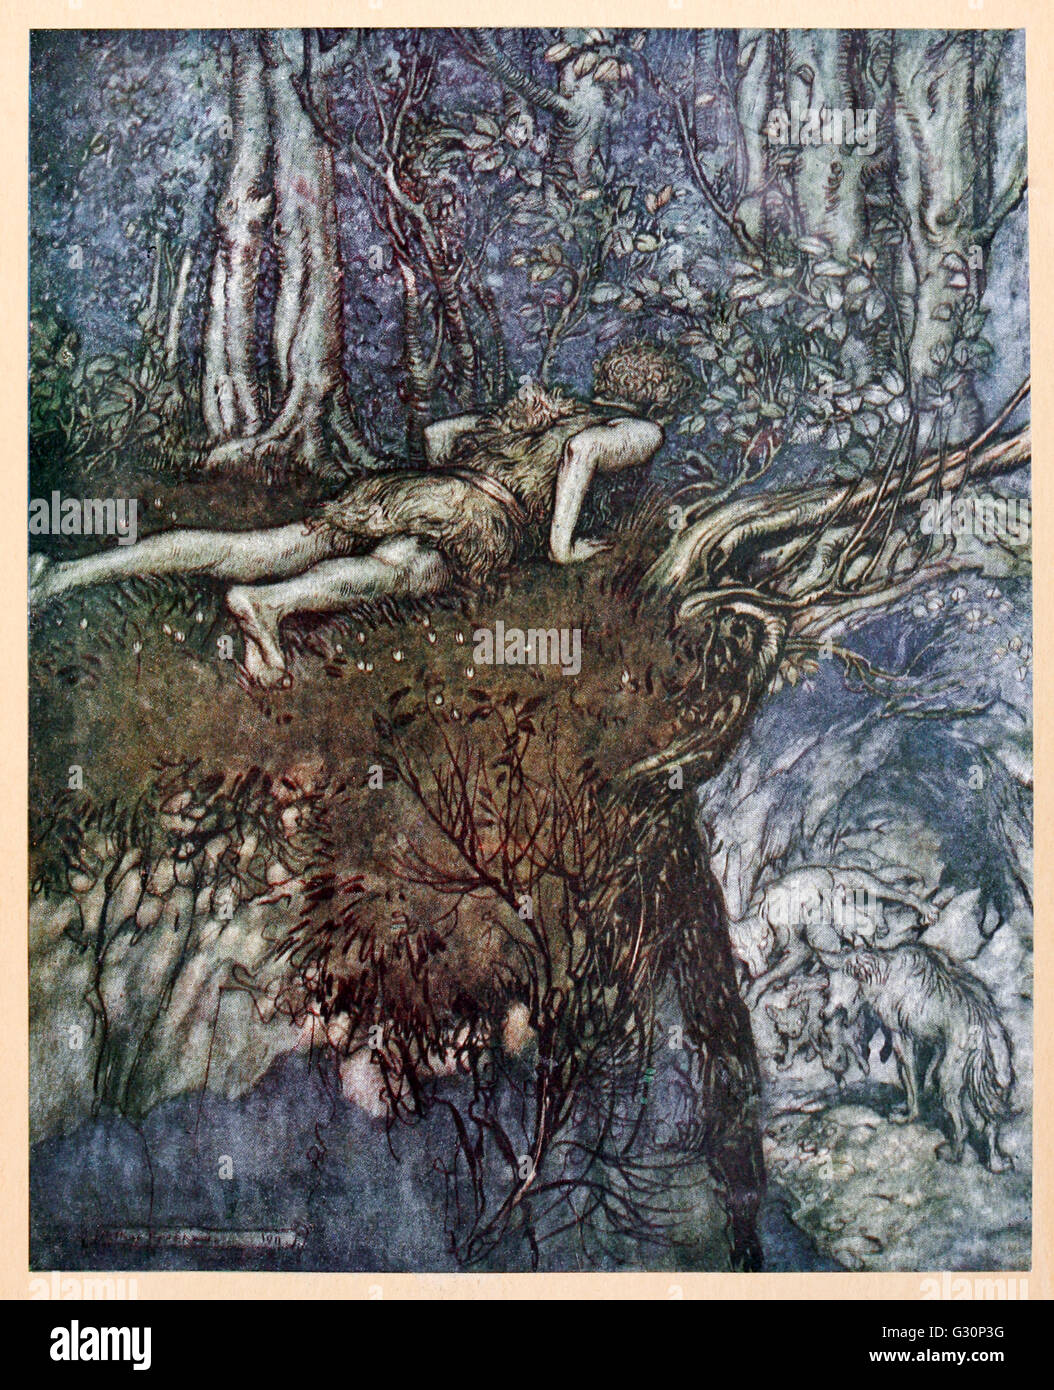 "Et là, j'ai appris ce que l'amour était comme" de Siegfried "& Le Crépuscule des dieux' illustré par Arthur Rackham (1867-1939). Voir la description pour plus d'informations. Banque D'Images